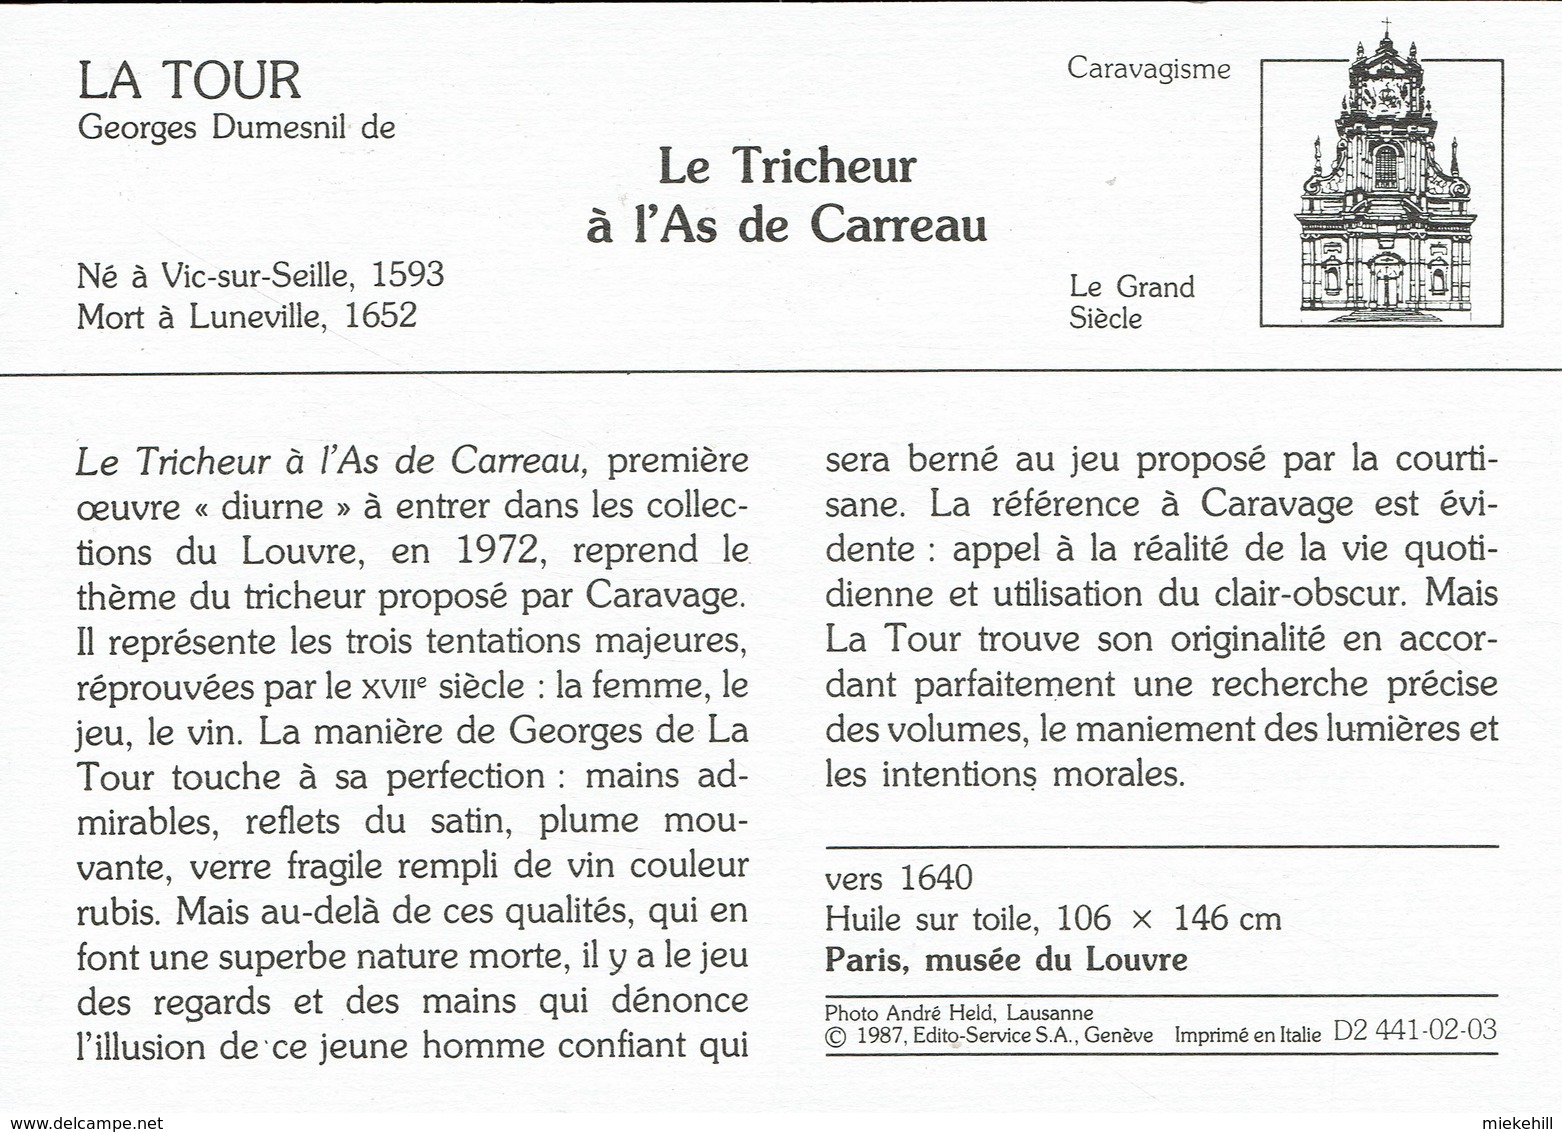 JEUX DE CARTE-TRICHEUR  A L'AS-VALSSPELER MET RUITENAAS-TABLEAU DE GEORGES LA TOUR-PARIS MUSEE DU LOUVRE - Cartes à Jouer